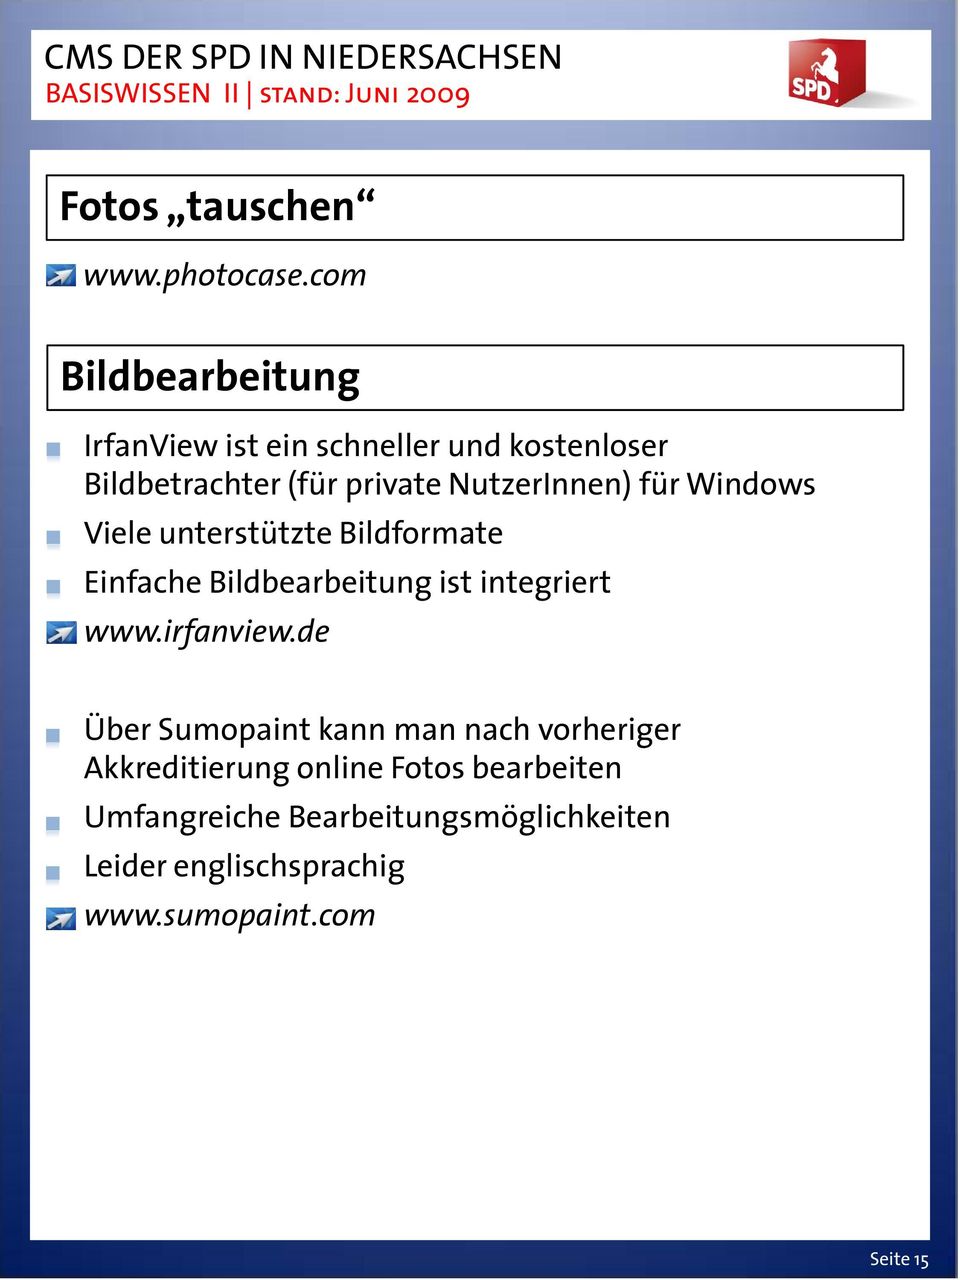 NutzerInnen) für Windows Viele unterstützte Bildformate Einfache Bildbearbeitung ist integriert www.